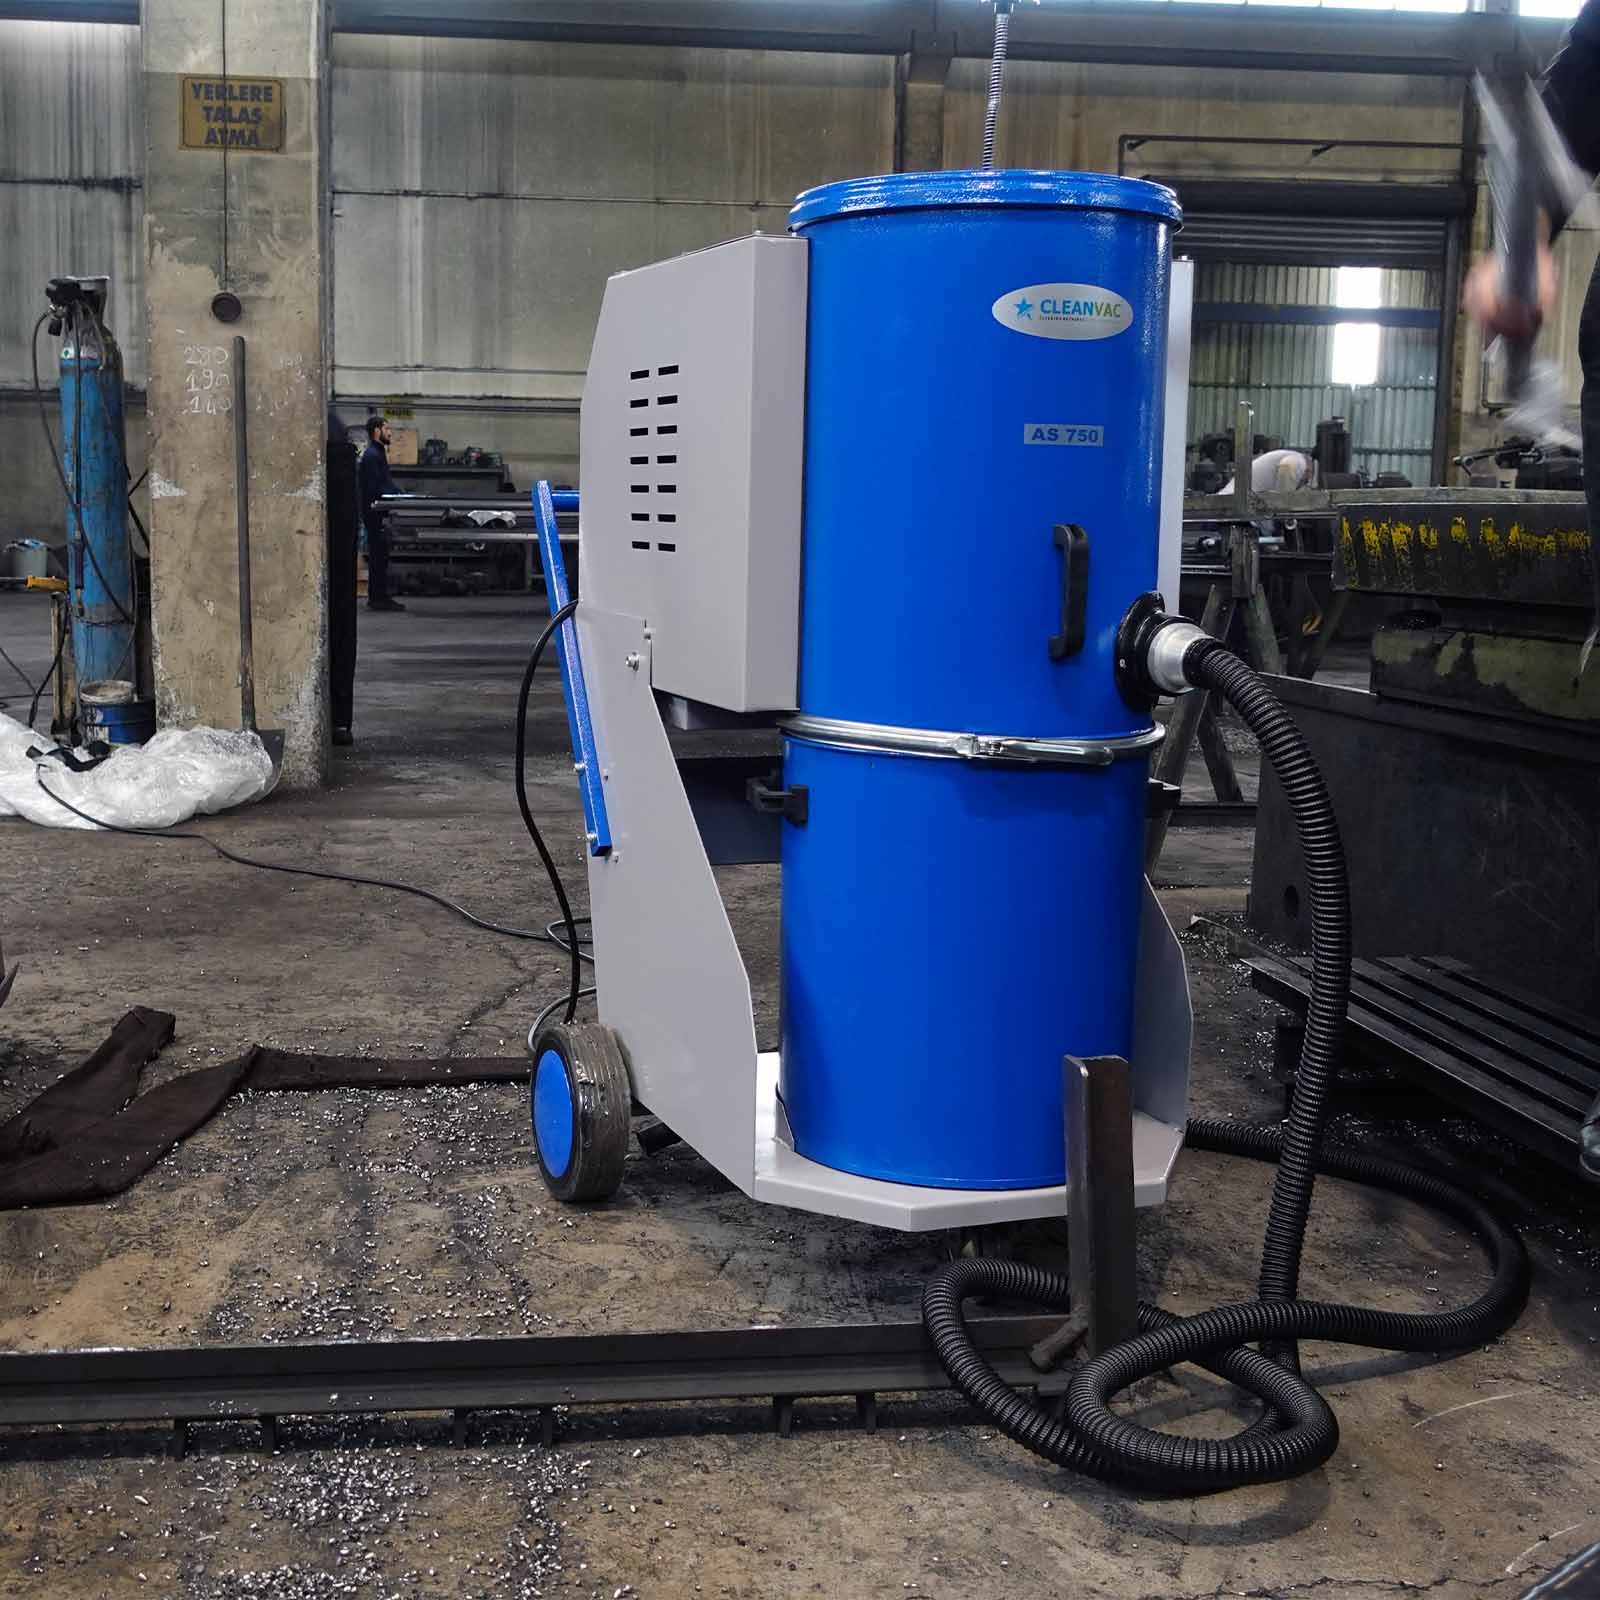 Endüstriyel Vakum Makinaları: Temizlik ve Üretimdeki Güçlü Yardımcılar - Endüstriyel Vakum Makinaları: Temizlik ve Üretimdeki Güçlü Yardımcılar